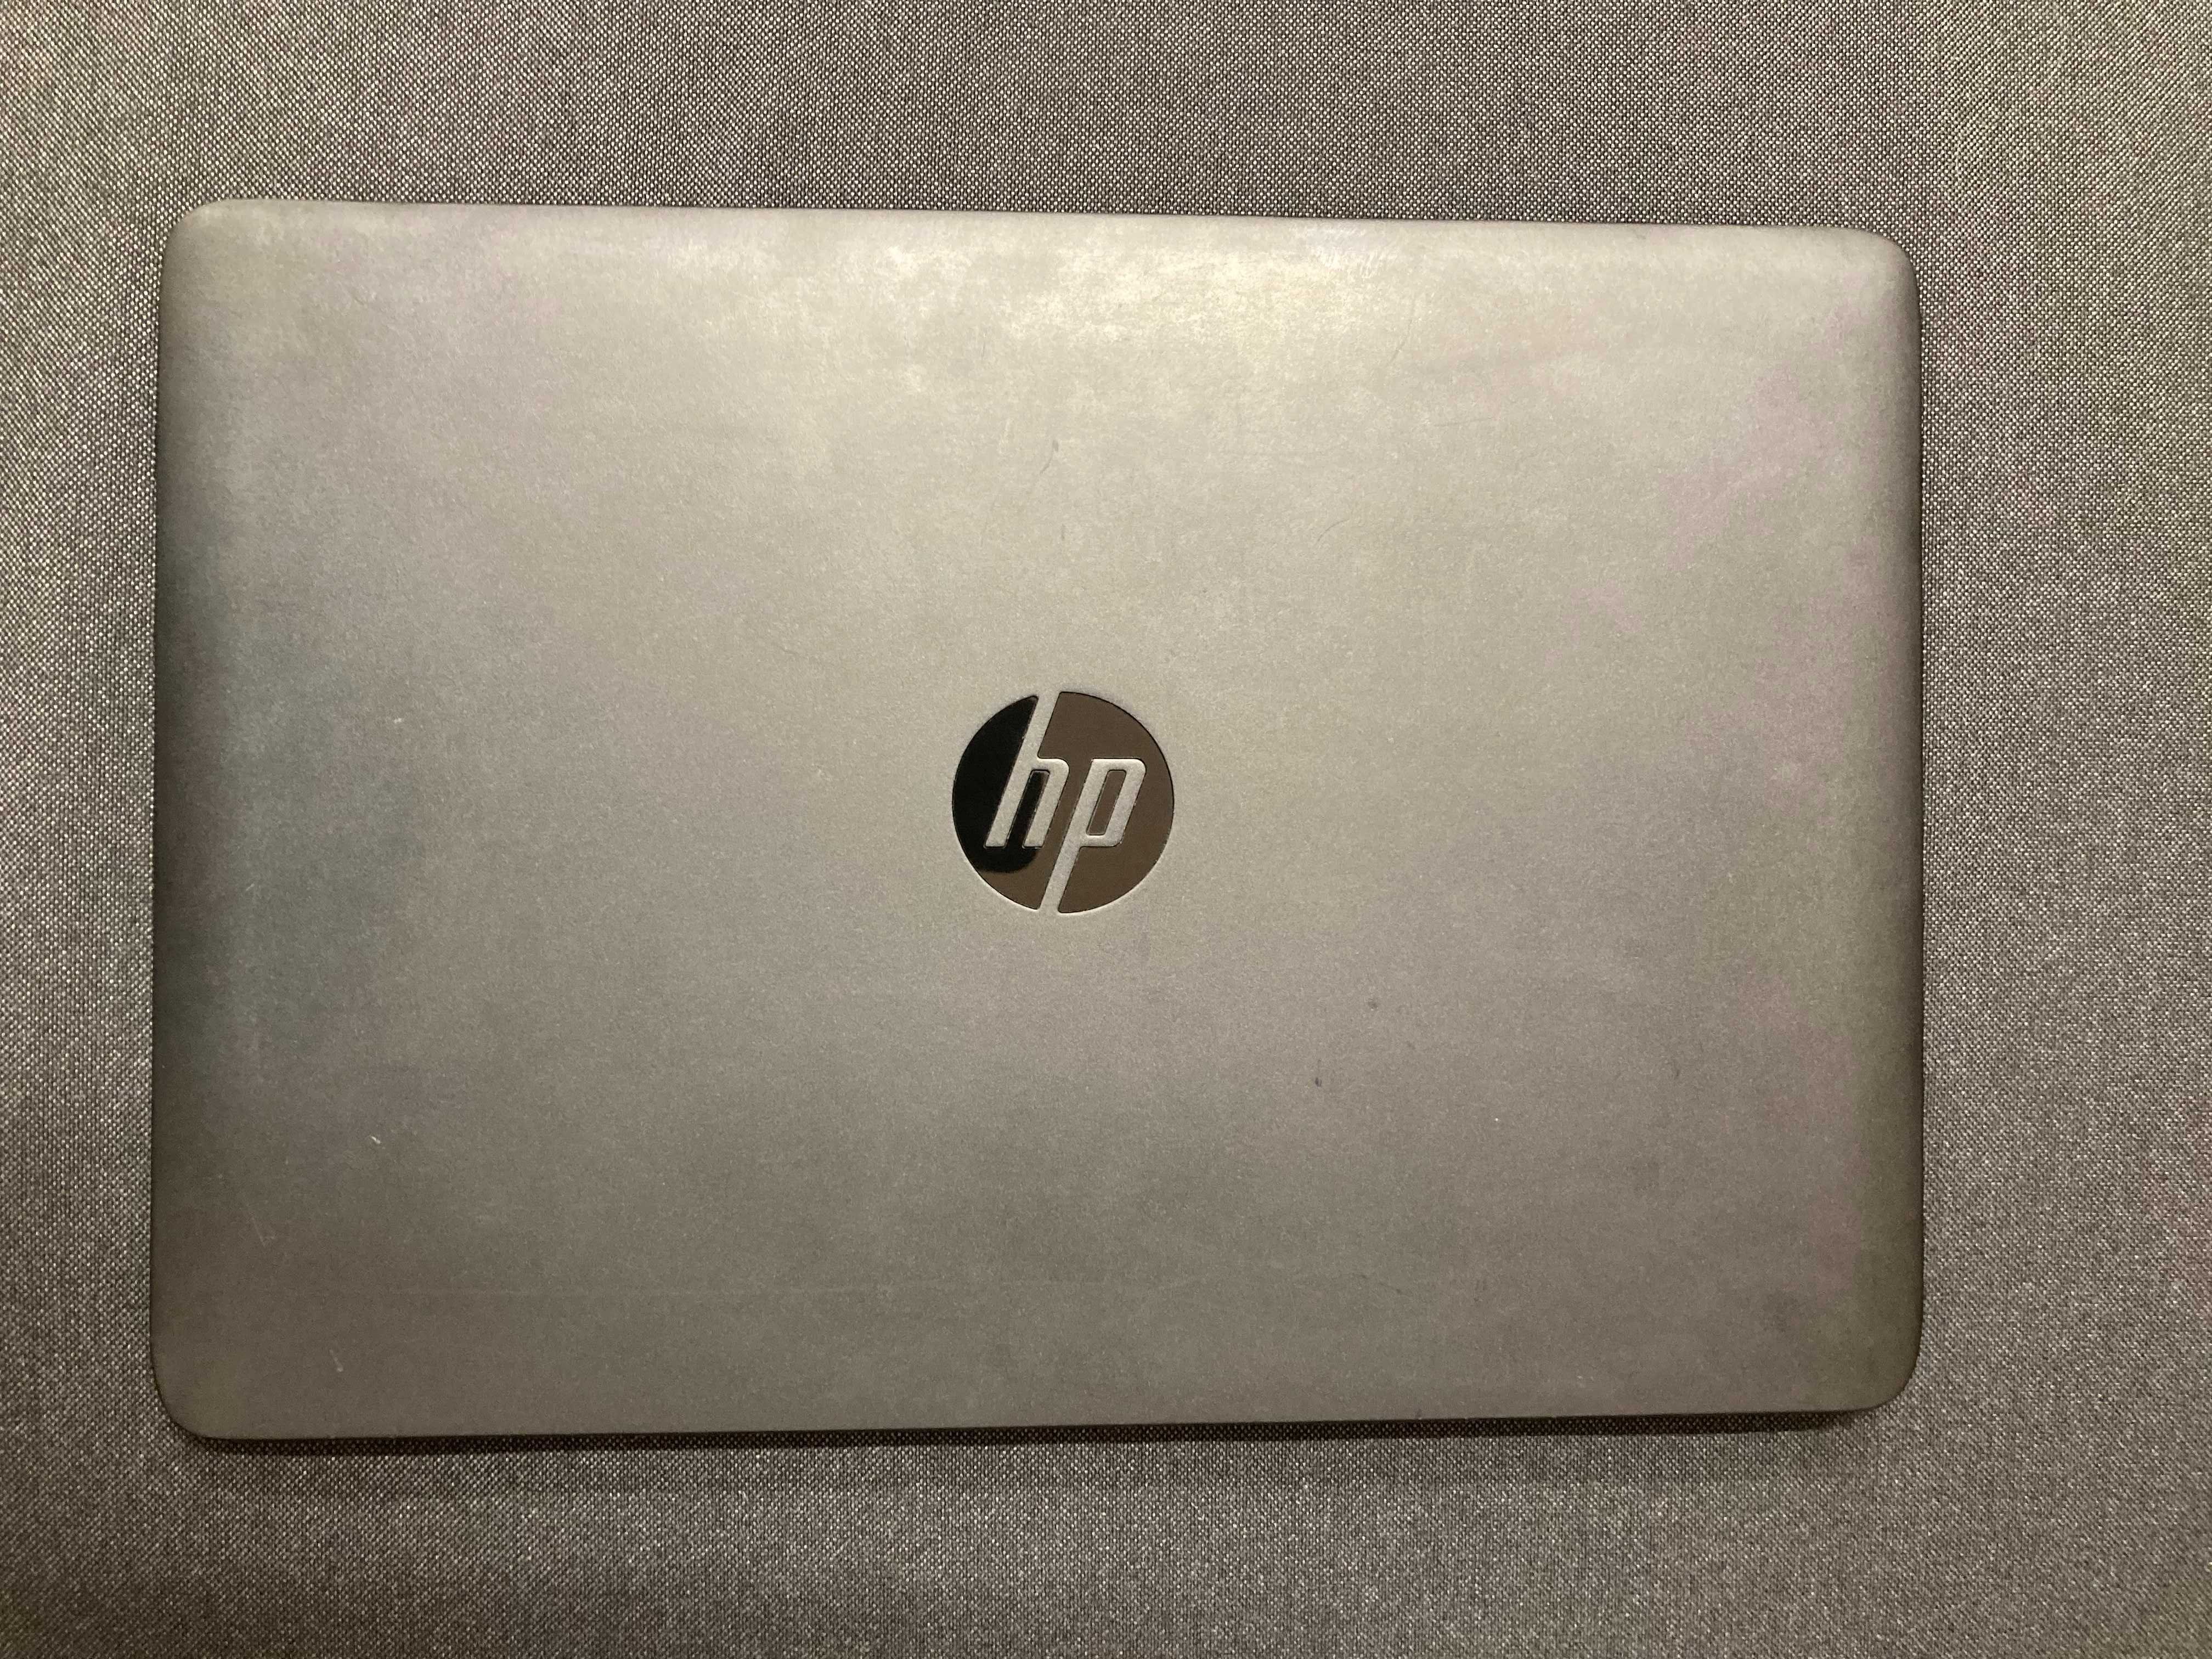 Dezmembrez laptop HP EliteBook 740 G1 / G2 defect pentru piese